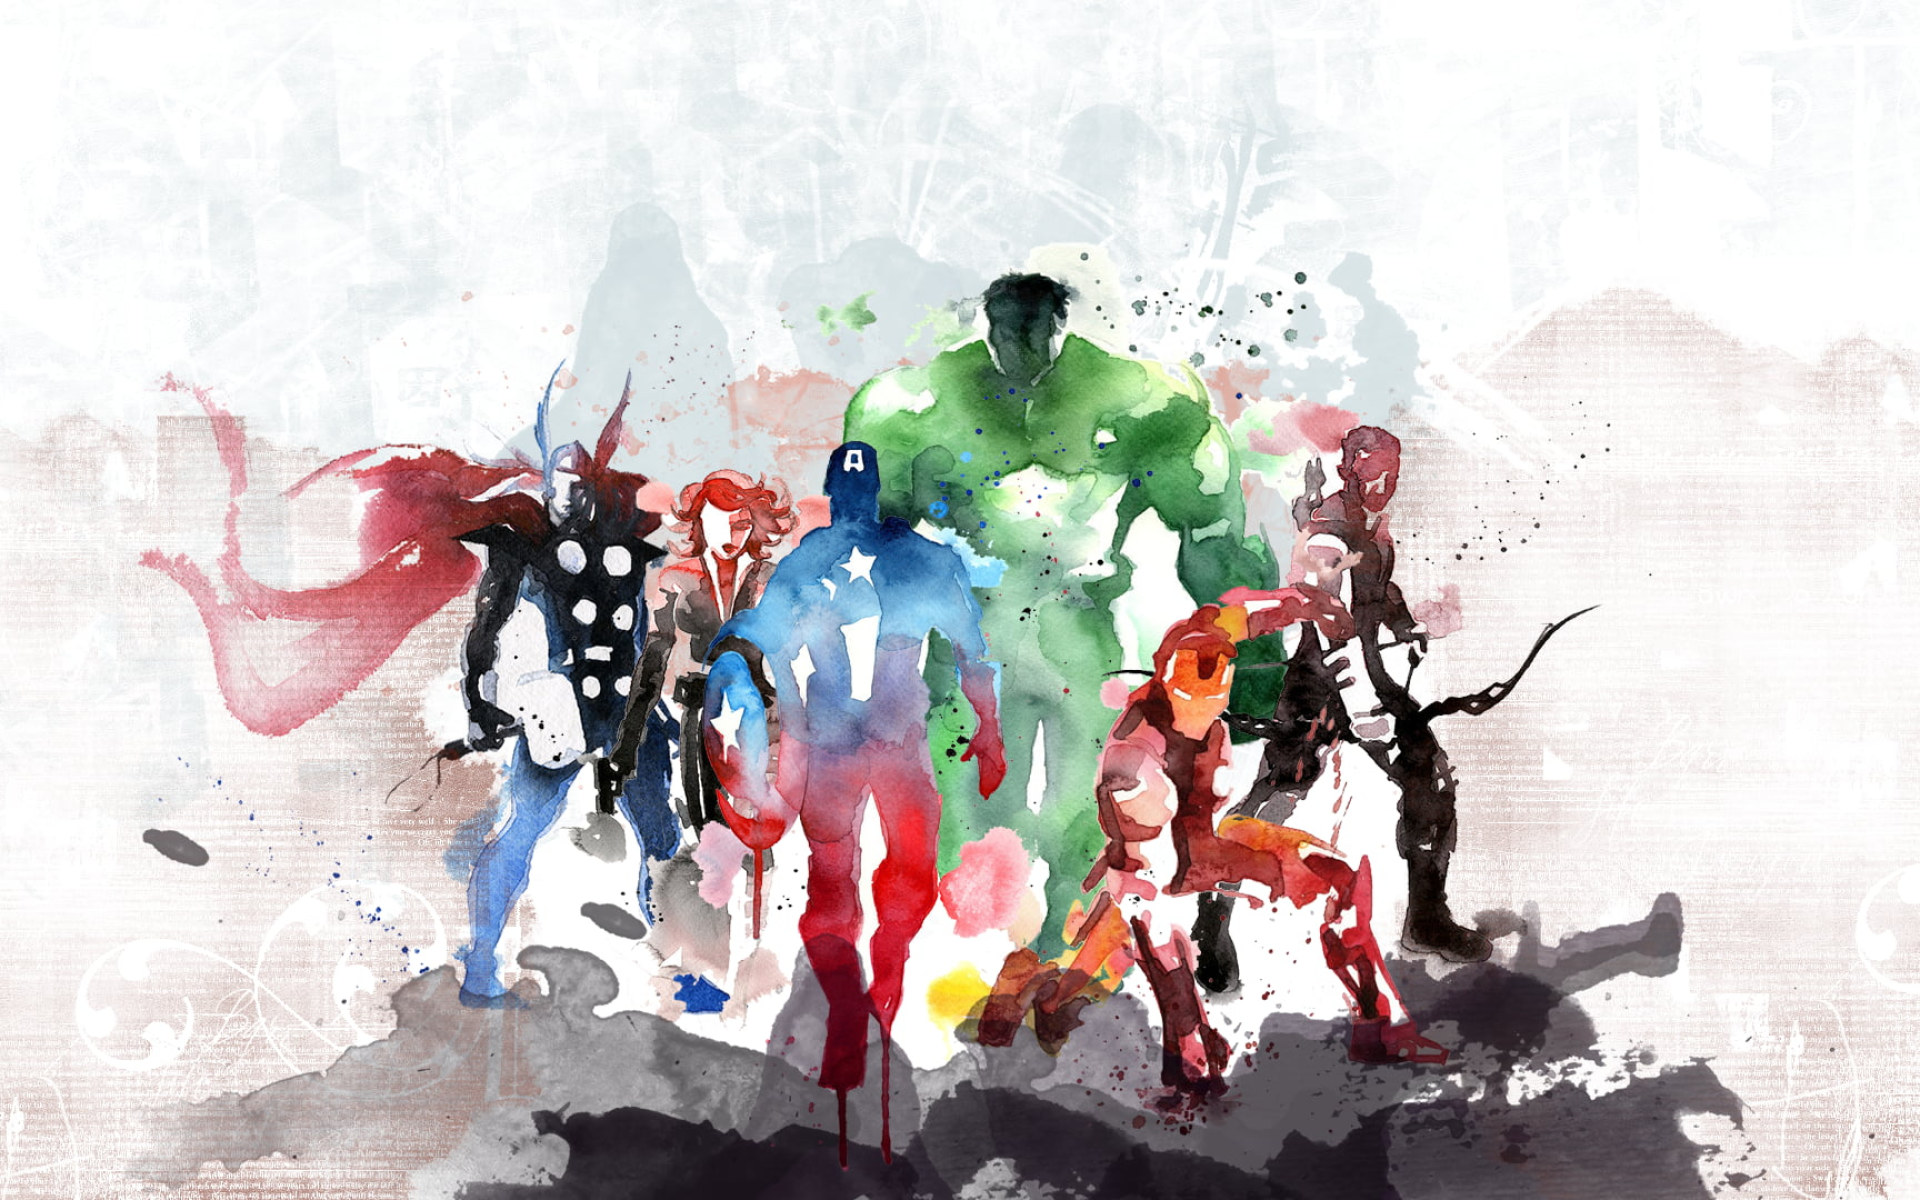 Marvel Avengers Painting Wallpaper, The Avengers, Iron Man, Captain America...